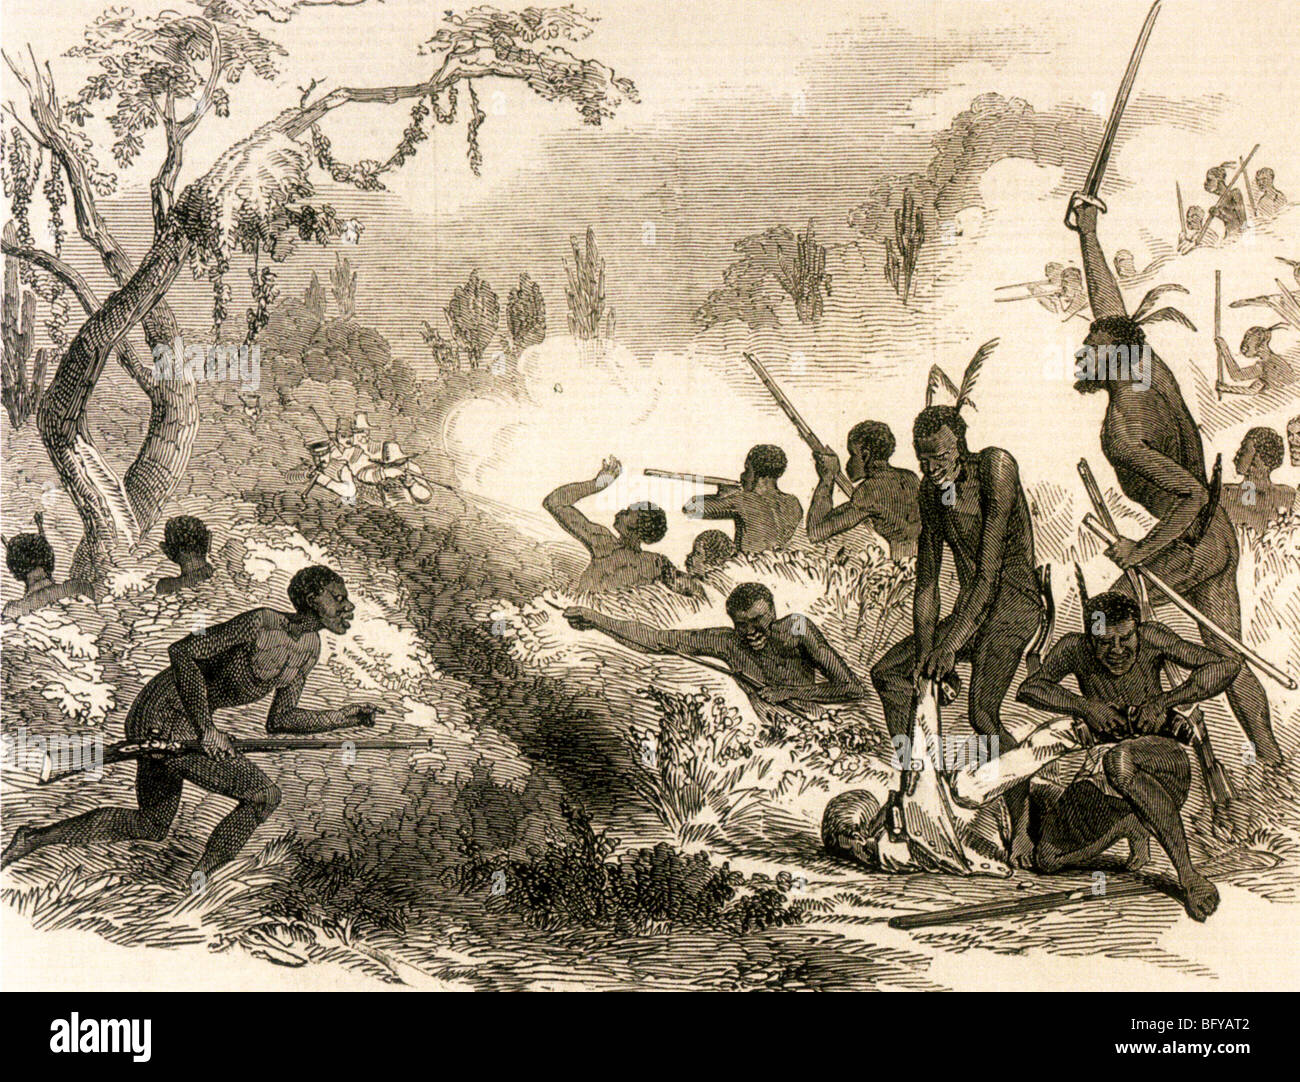 XHOSA tribesmen agguato le truppe britanniche in uno del capo guerre di frontiera anche noto come le guerre Kaffir a metà ottocento Foto Stock